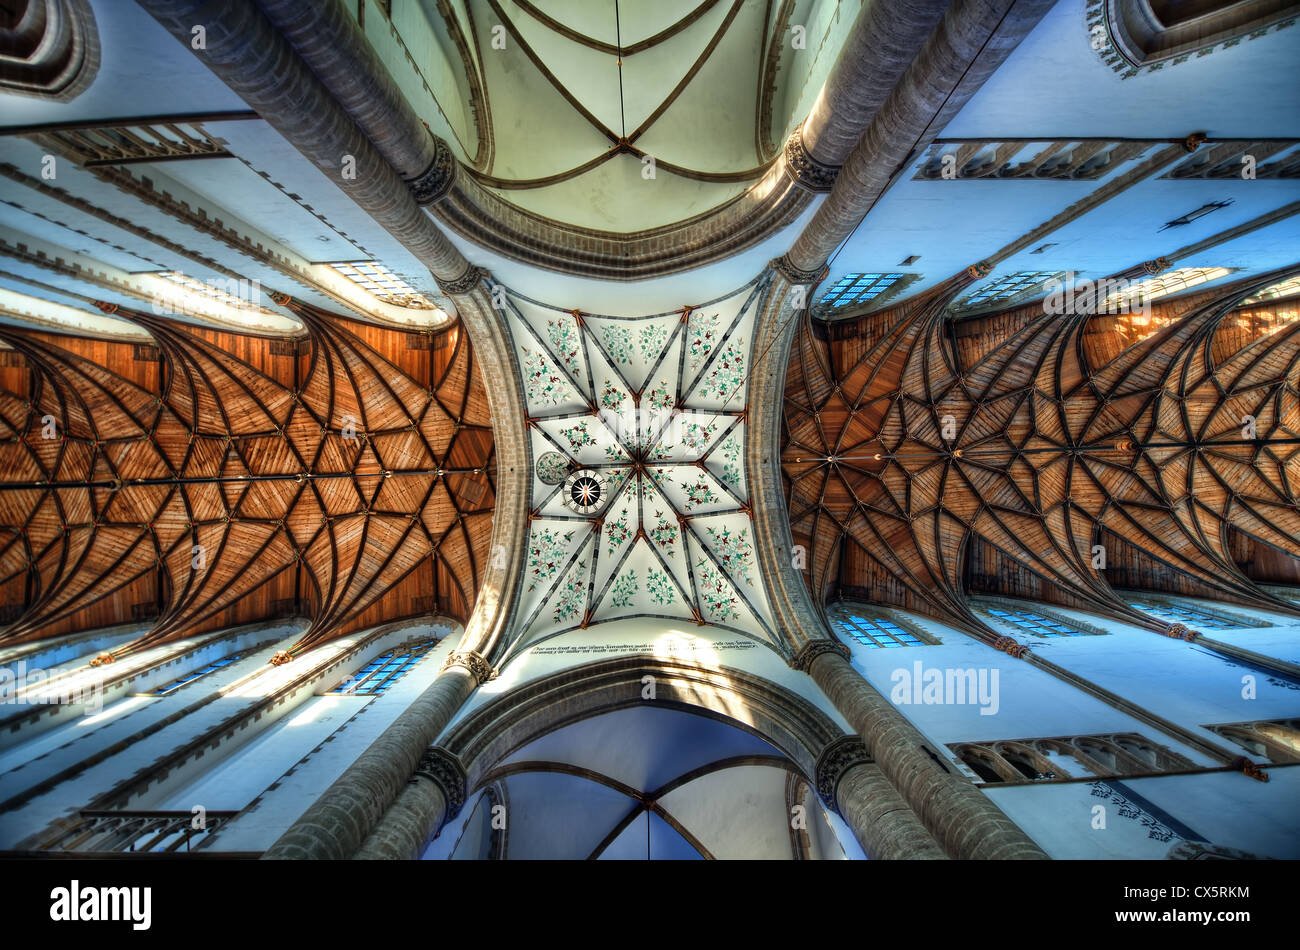 Der reich verzierte Decke von der gotischen Kathedrale Saint Bavo in Haarlem, Niederlande. Die Kathedrale ist auch bekannt als der Grote Kerk. Stockfoto